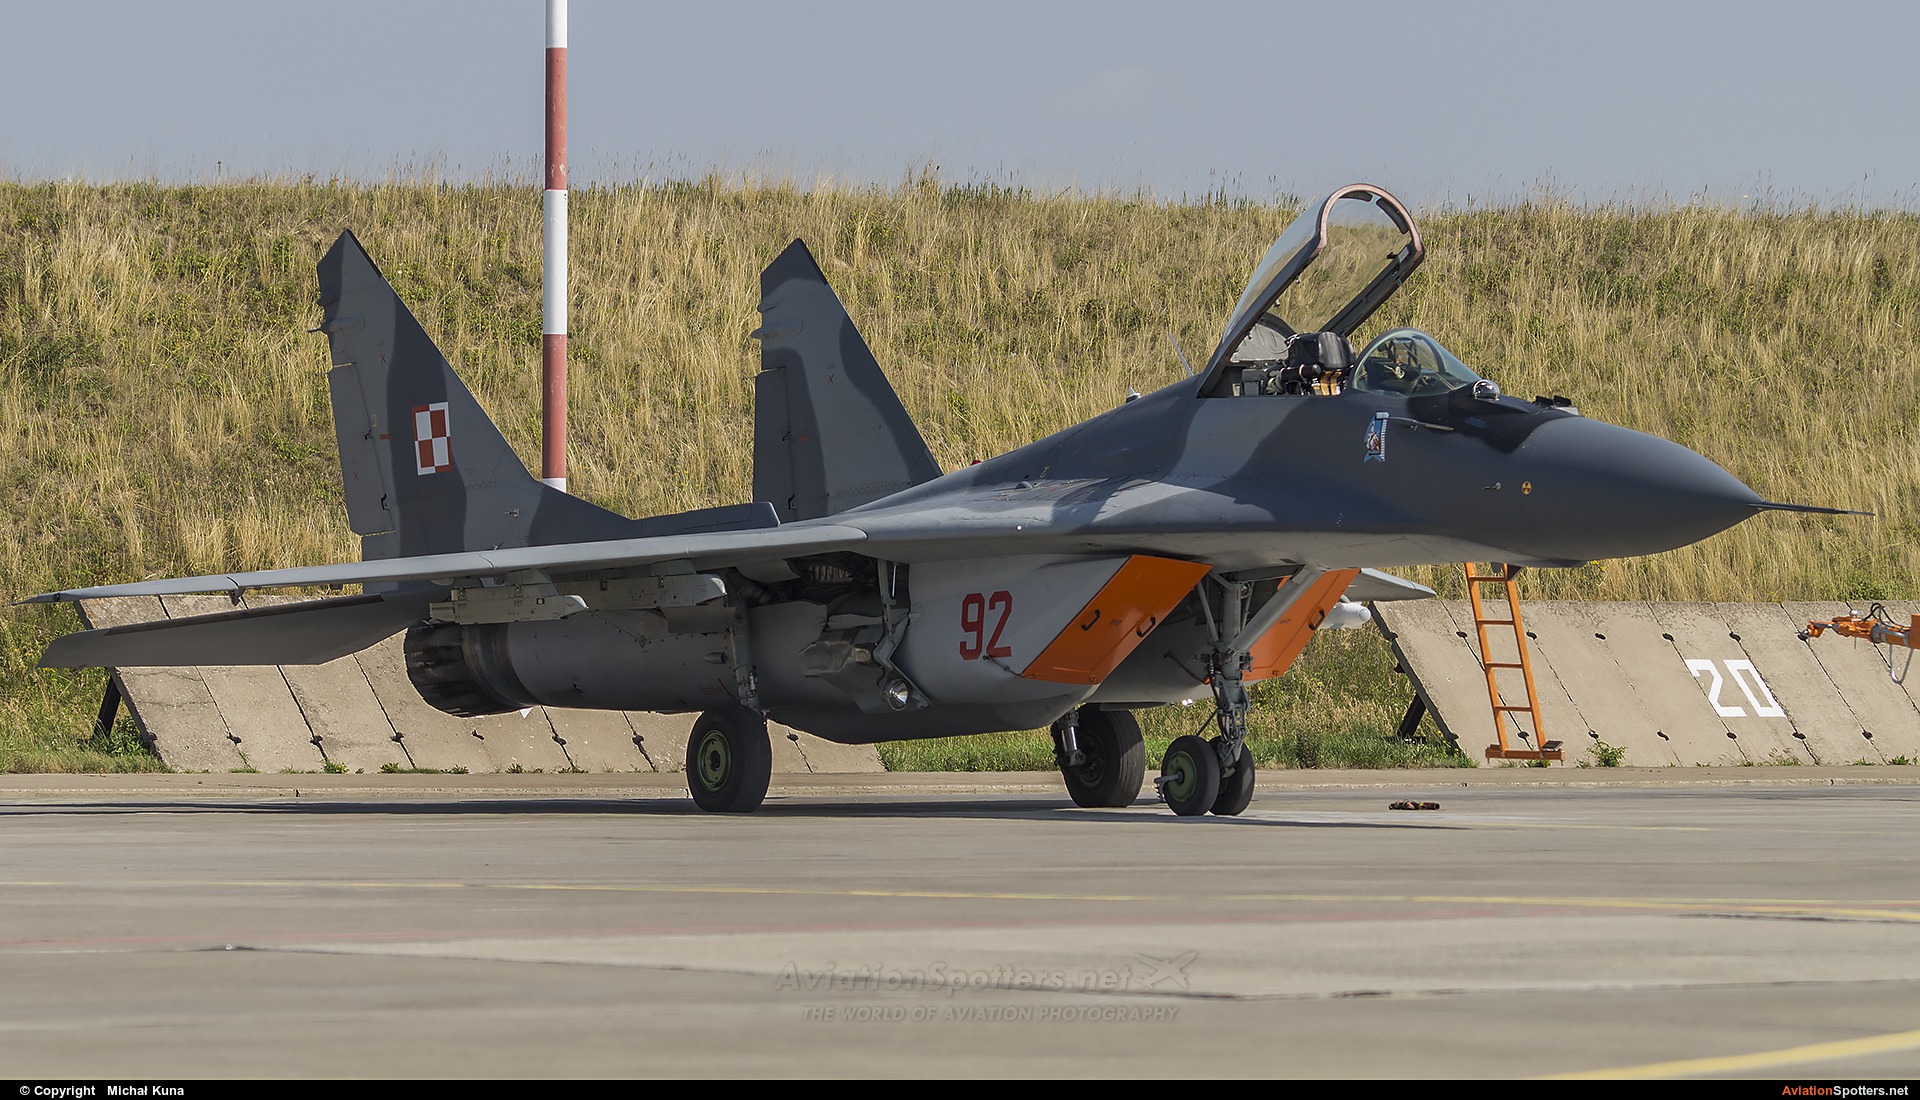 Poland - Air Force  -  MiG-29A  (92) By Michał Kuna (big)